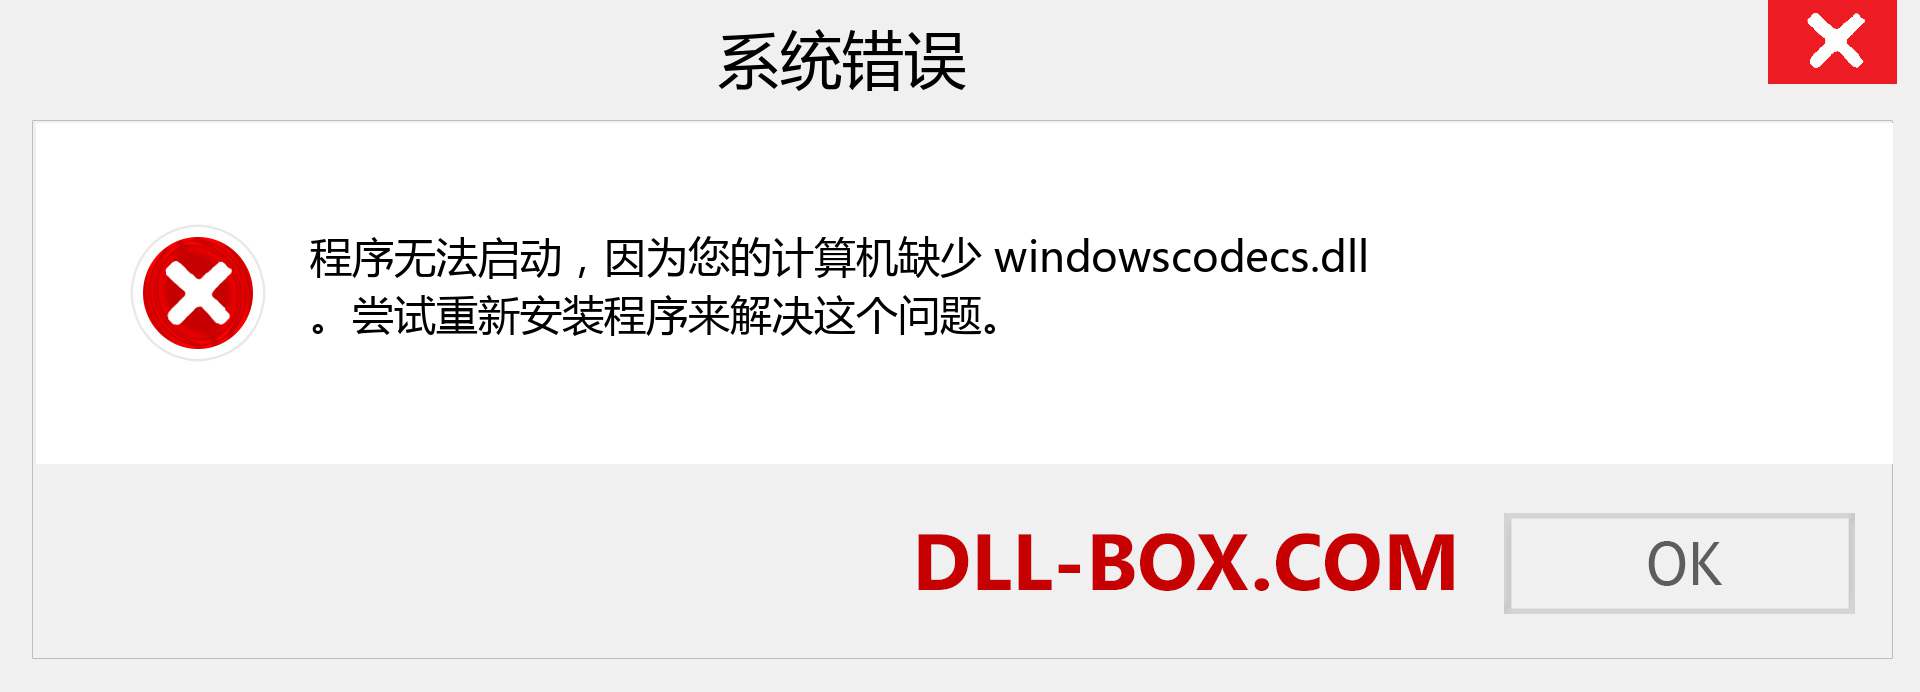 windowscodecs.dll 文件丢失？。 适用于 Windows 7、8、10 的下载 - 修复 Windows、照片、图像上的 windowscodecs dll 丢失错误